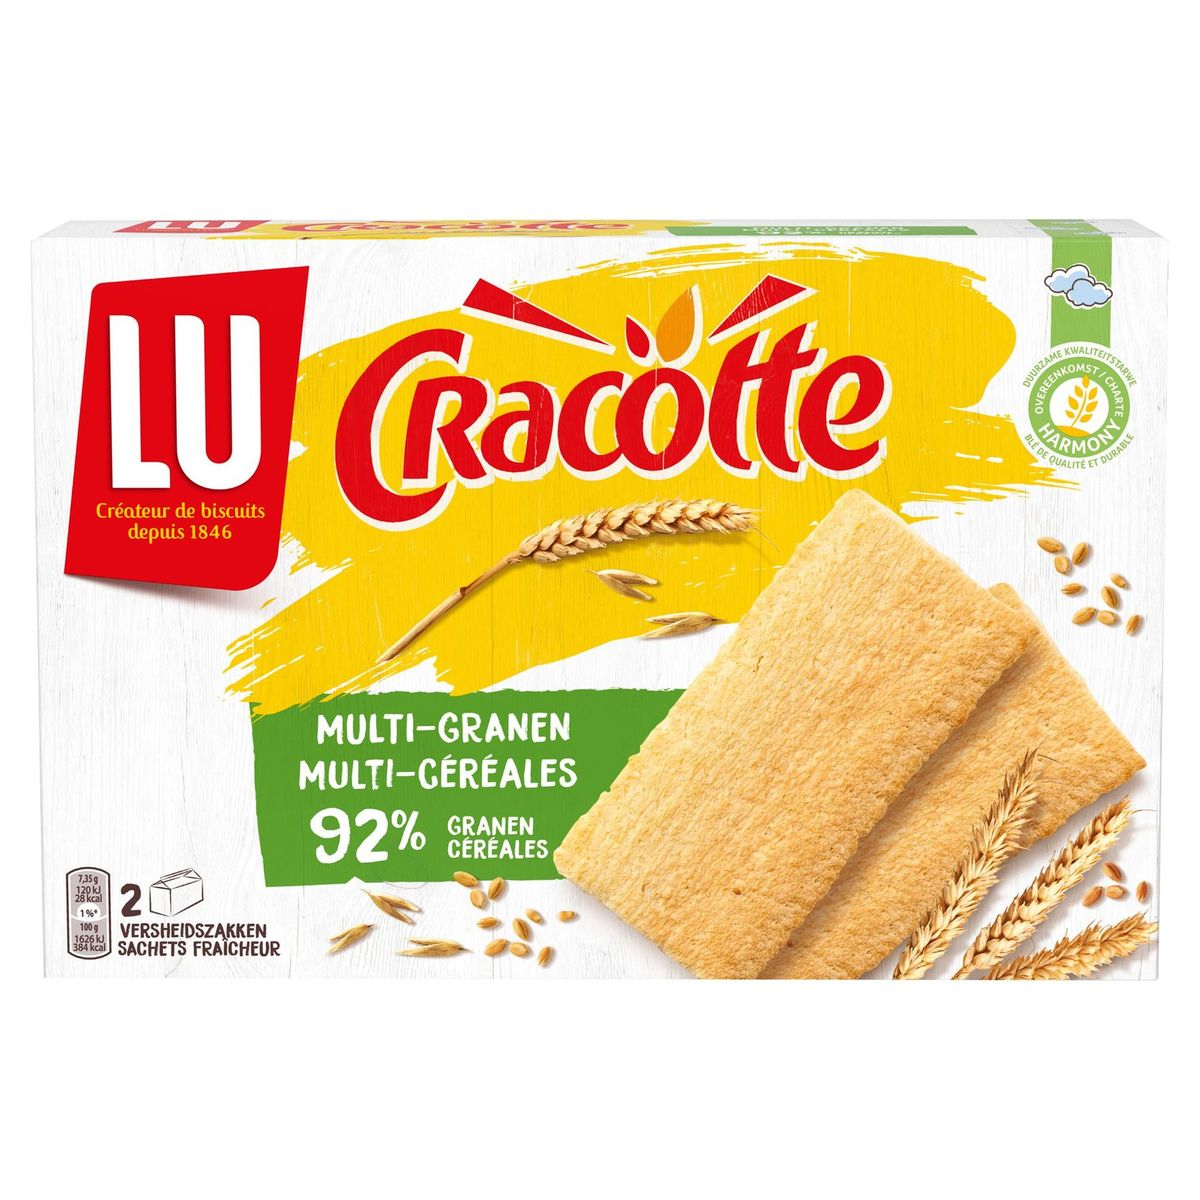 LU Cracotte Multi-Céréales 250 g